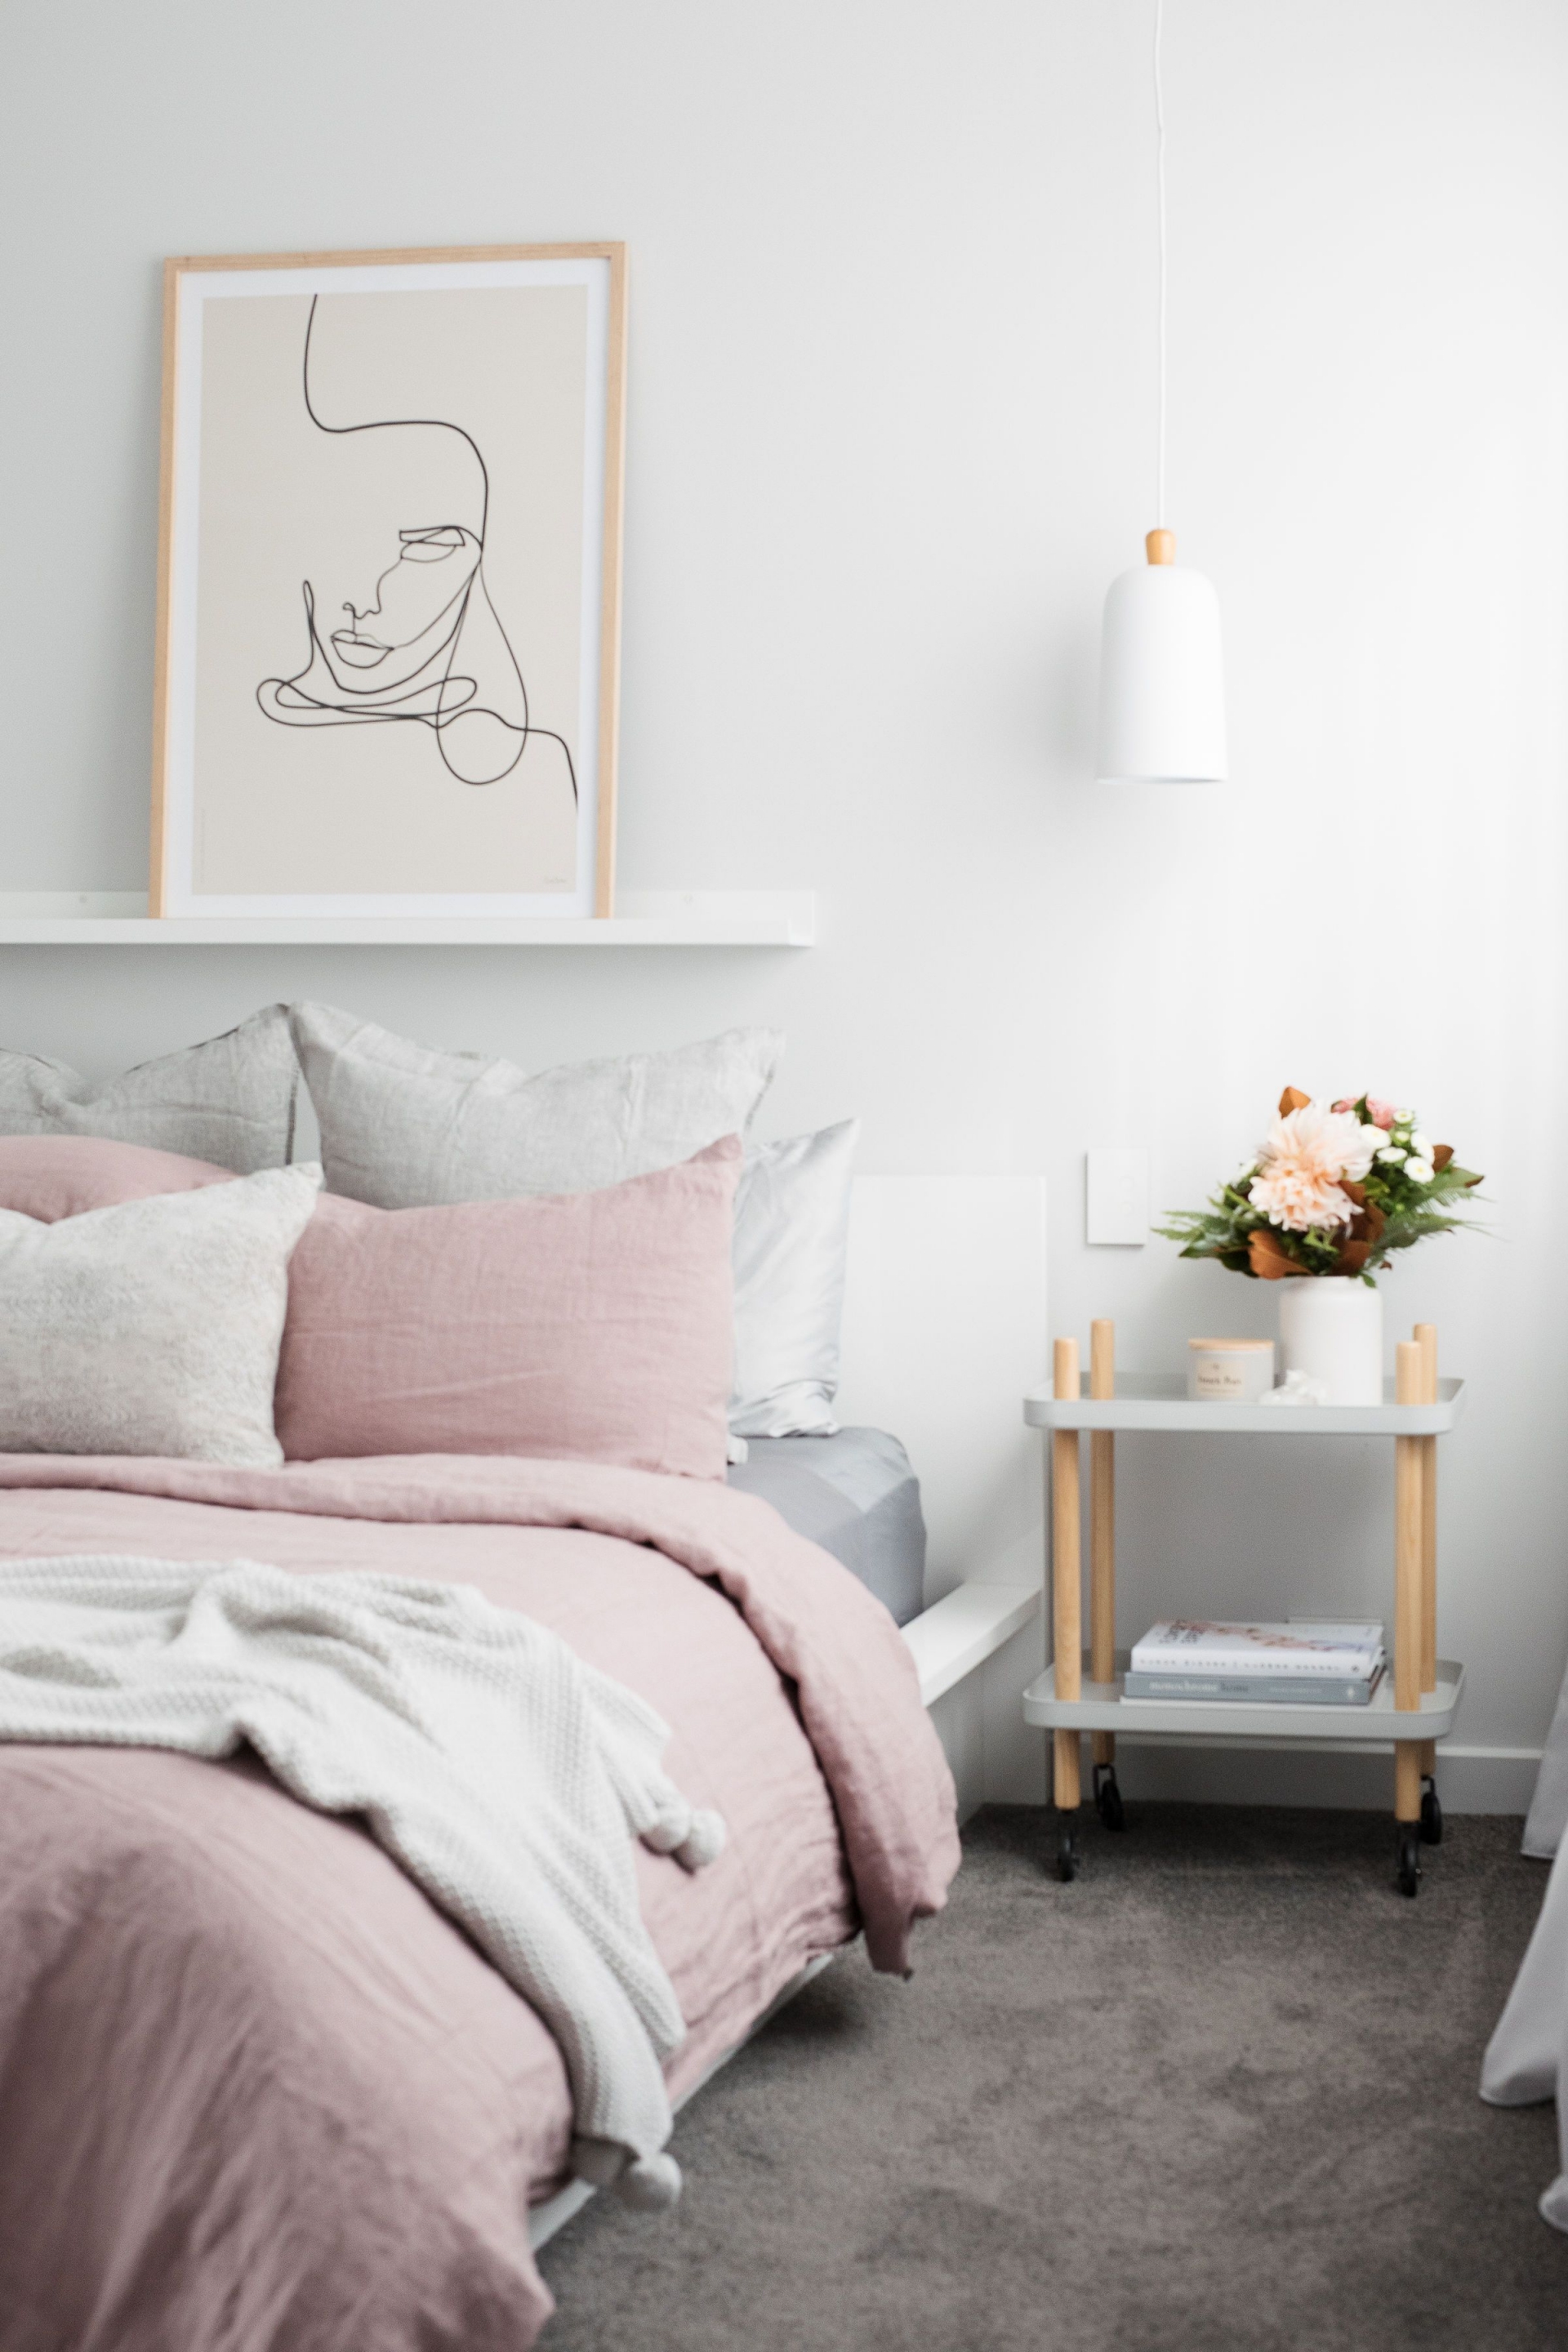 Phòng ngủ với 3 gam màu trắng - hồng - xám được thiết kế theo phong cách tối giản, phụ kiện trang trí chỉ đơn giản là bức tranh trừu tượng và lọ hoa duyên dáng, táp đầu giường đồng thời là chiếc kệ có lắp bánh xe nên cực kỳ linh hoạt.